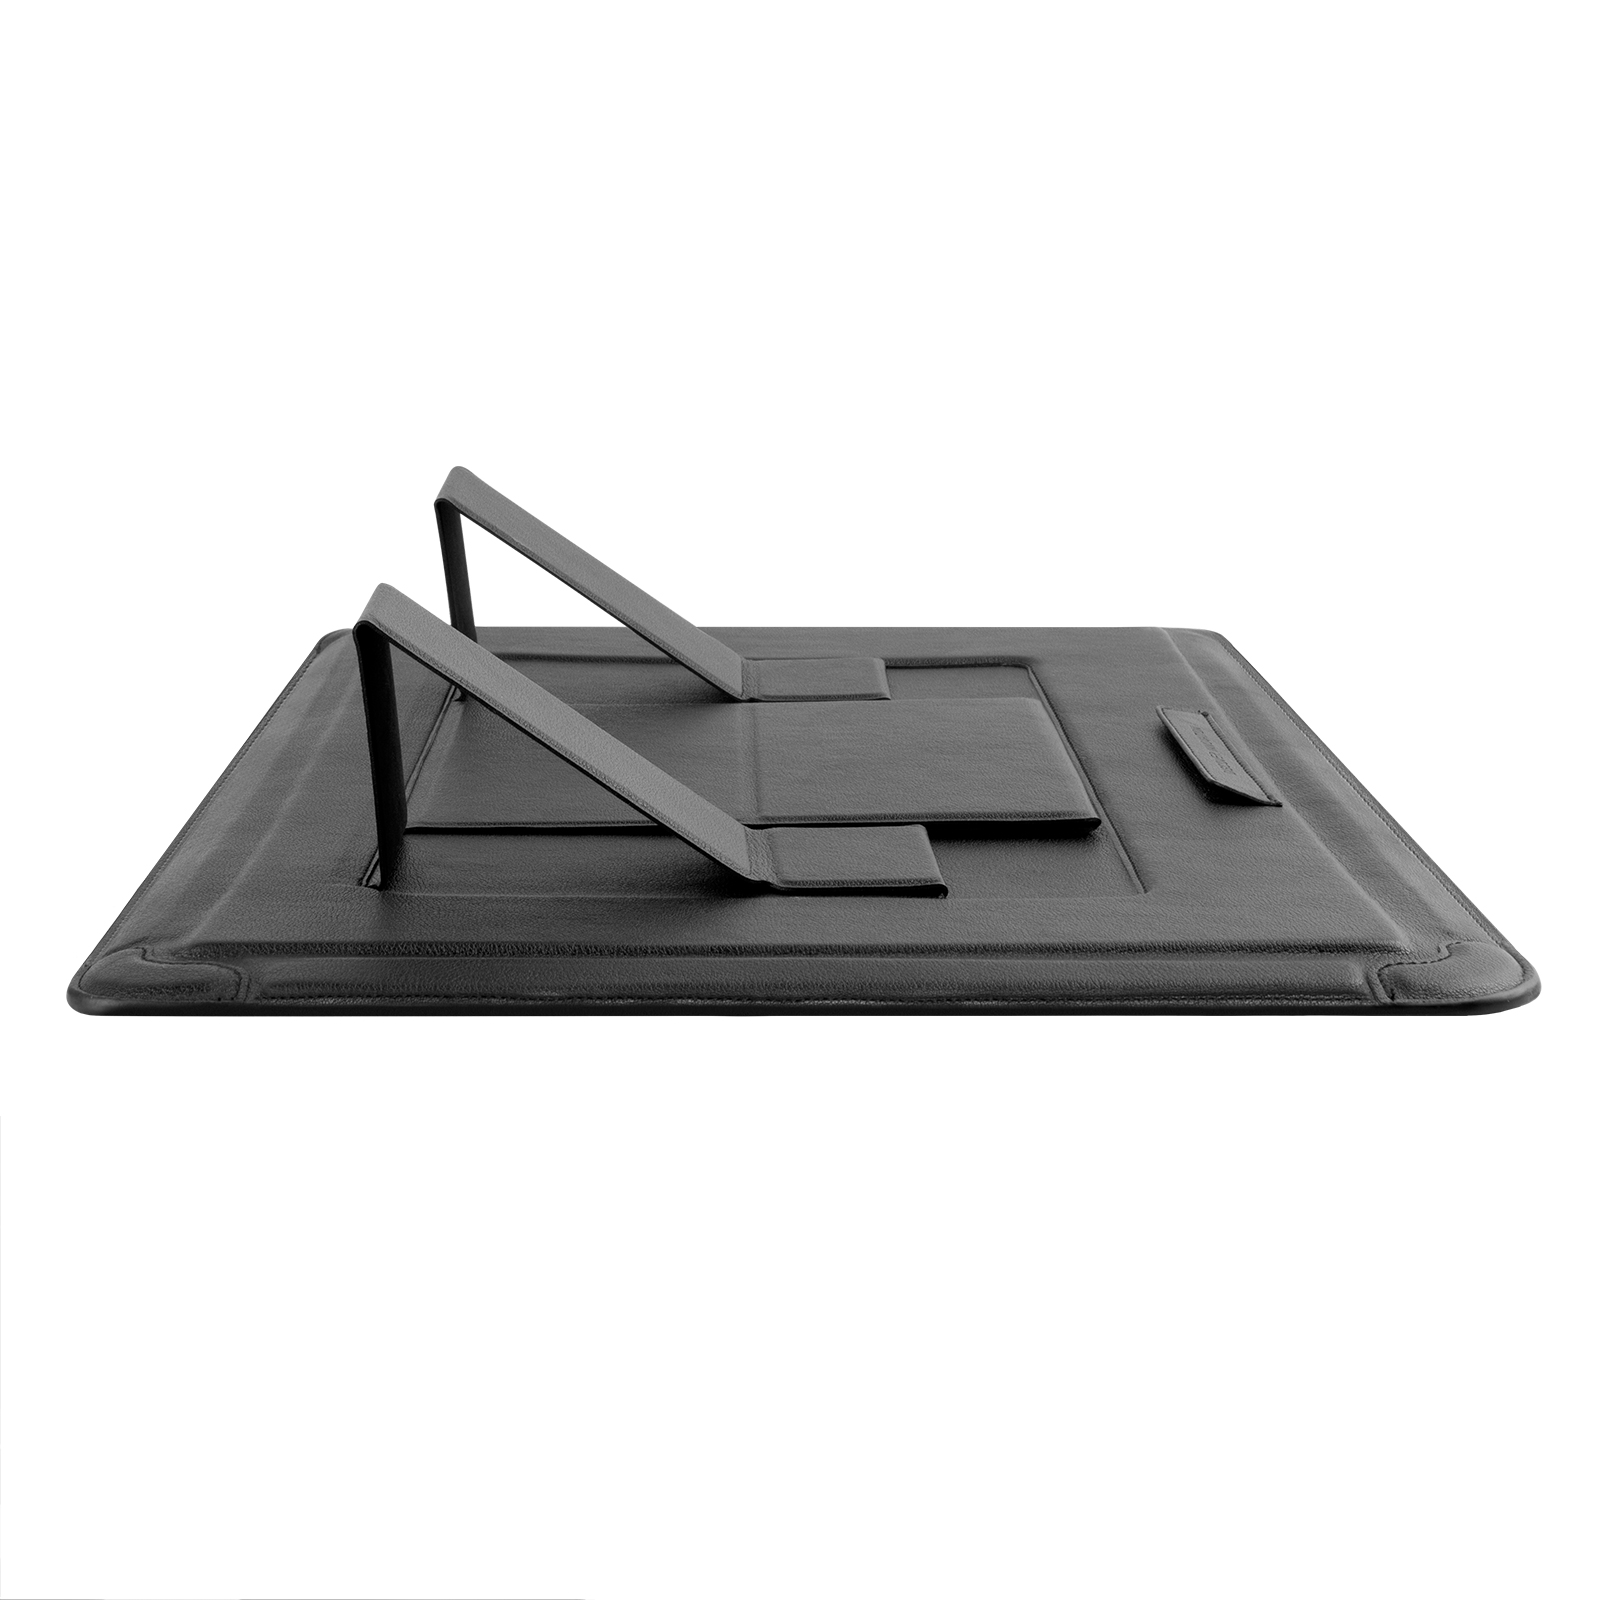 Cặp đựng Folio, Bao Da, Túi Chống Shock Nillkin Versatile Plus Laptop Sleeve 15.6-16.1 inch cho Macbook Pro 16 Pro 15 inch Laptop 16inch - Hàng Nhập Khẩu